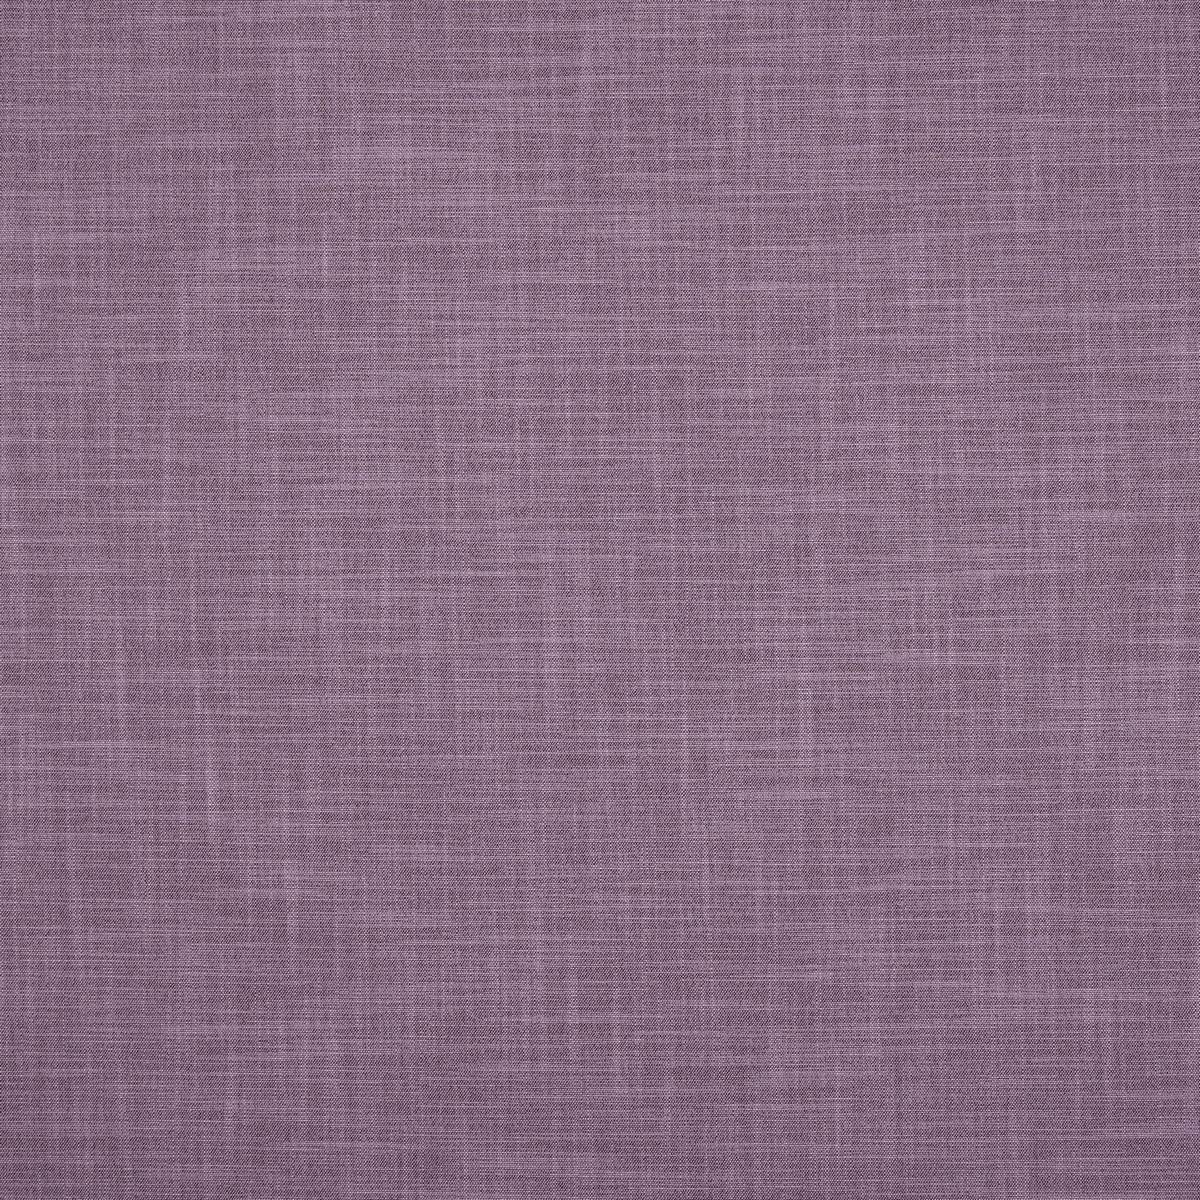 Zander Lavender Fabric by Ashley Wilde